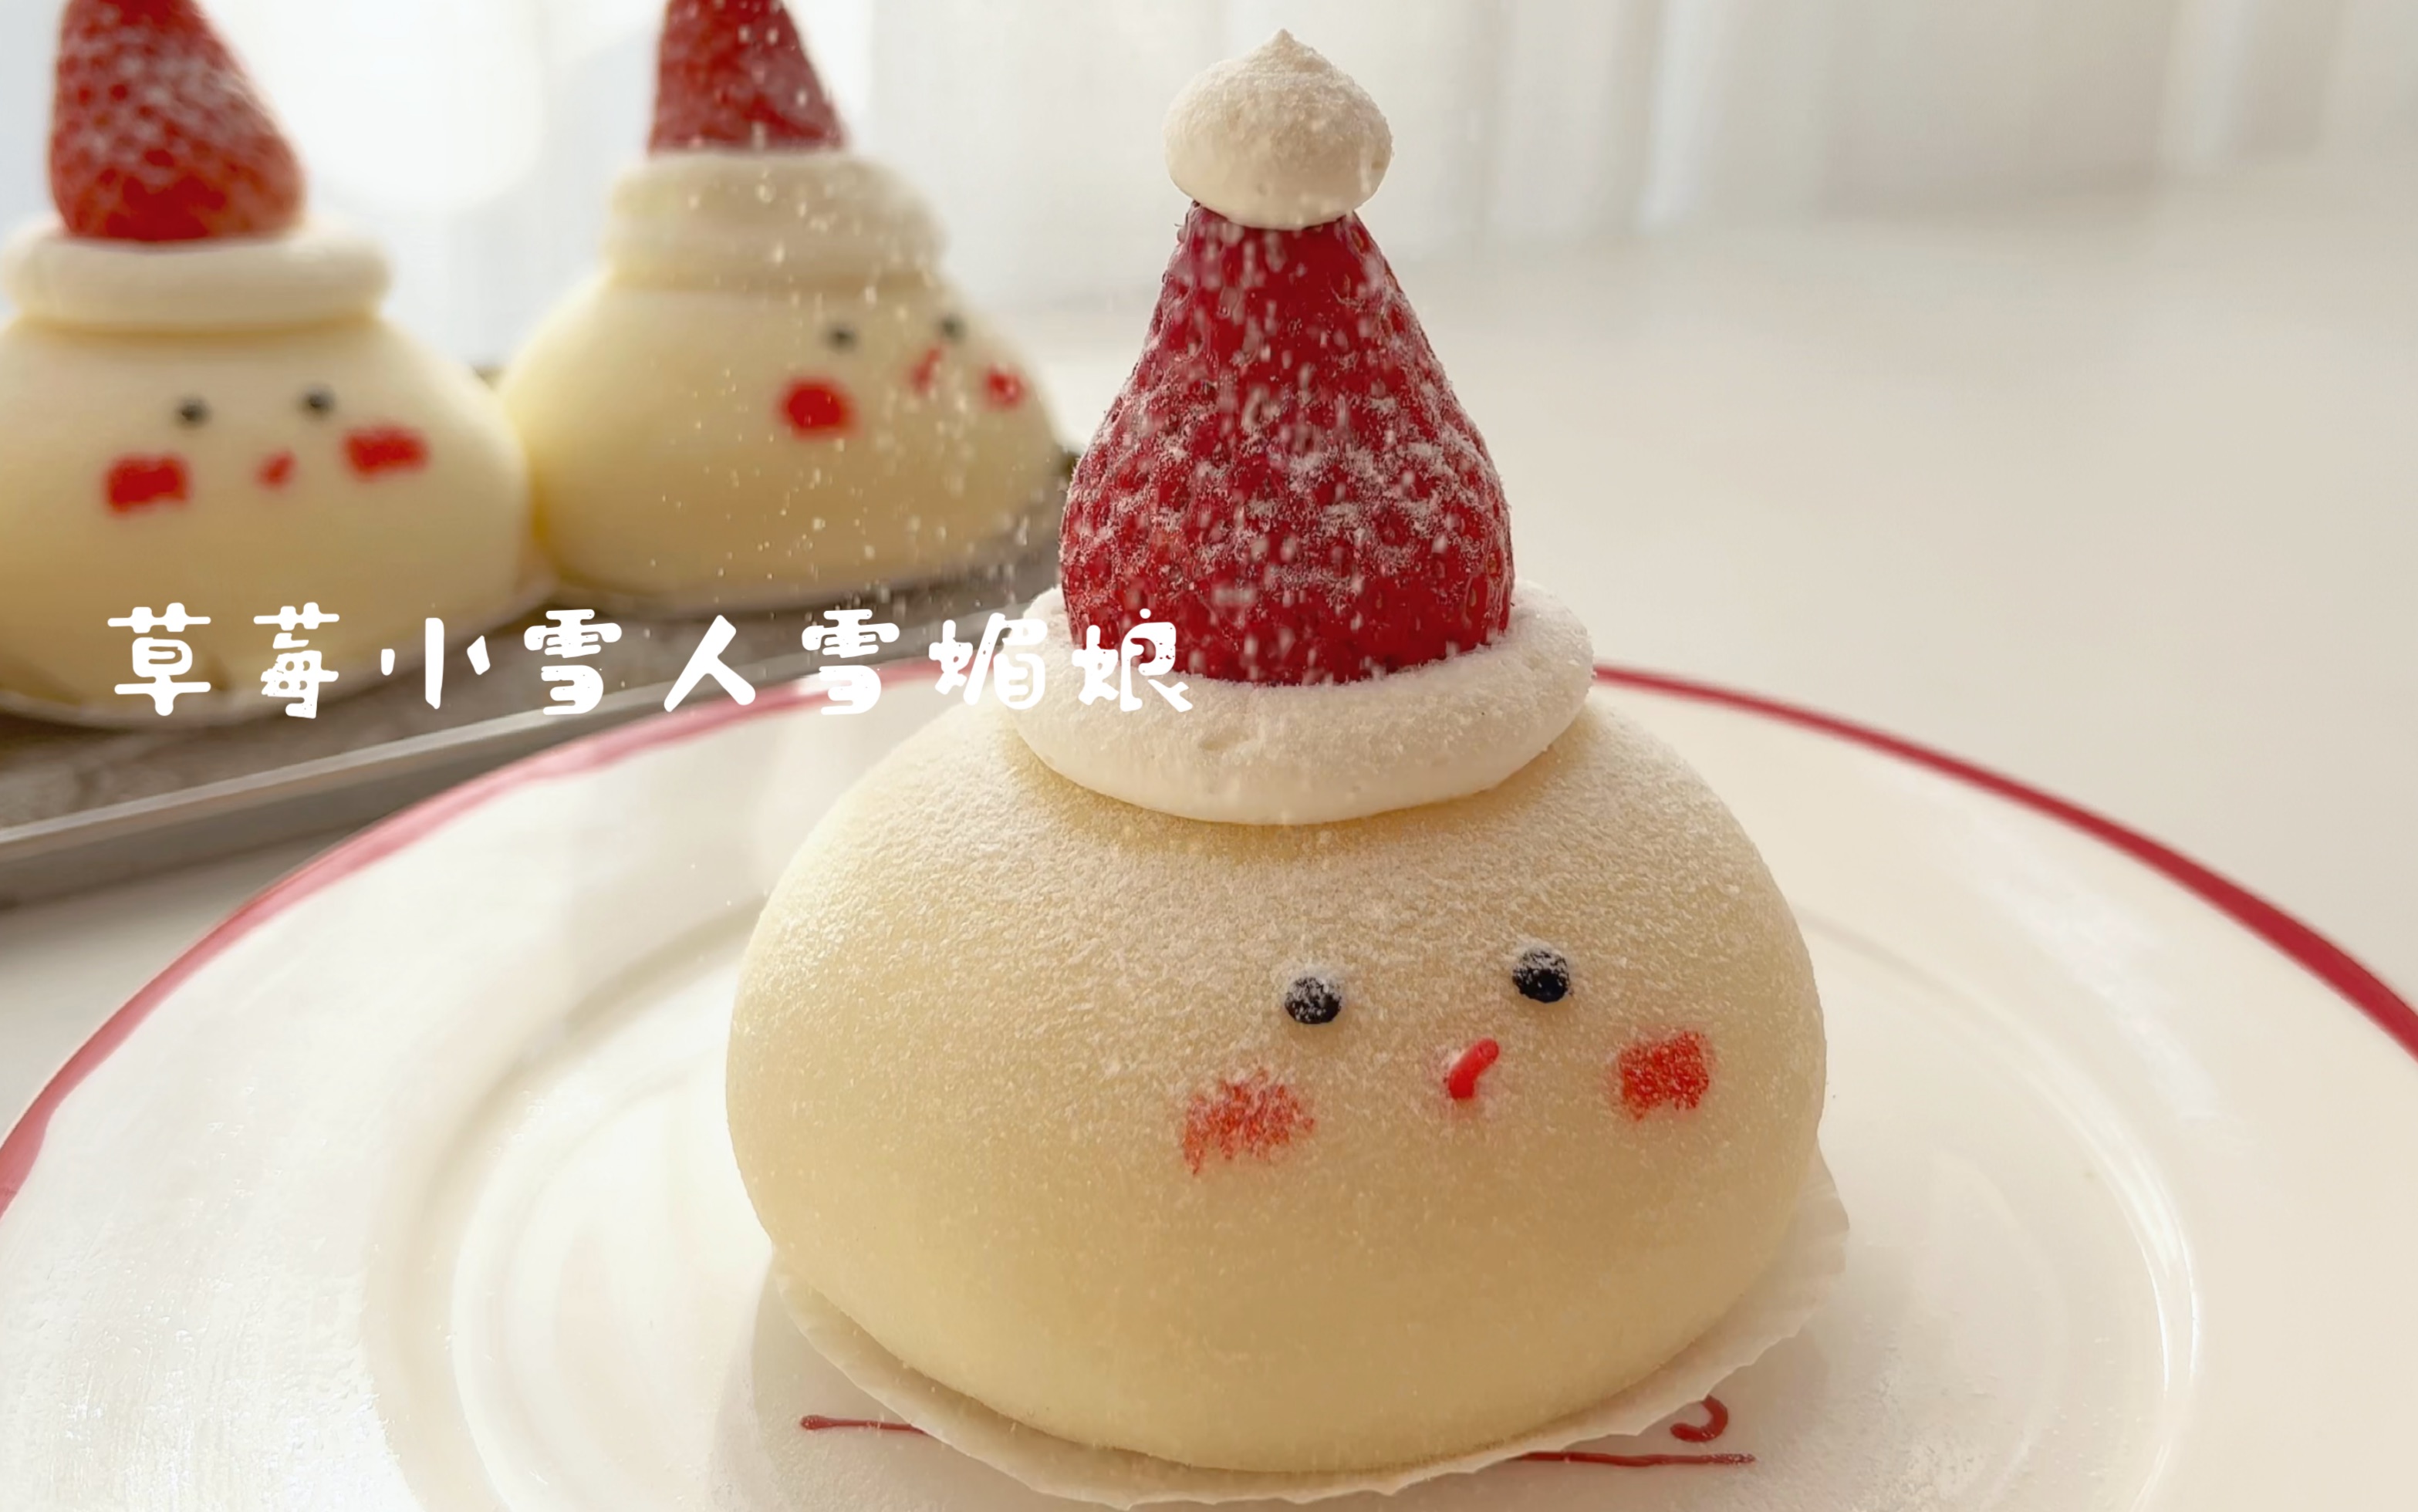 可爱的草莓小雪人蛋糕美食壁纸 -桌面天下（Desktx.com）